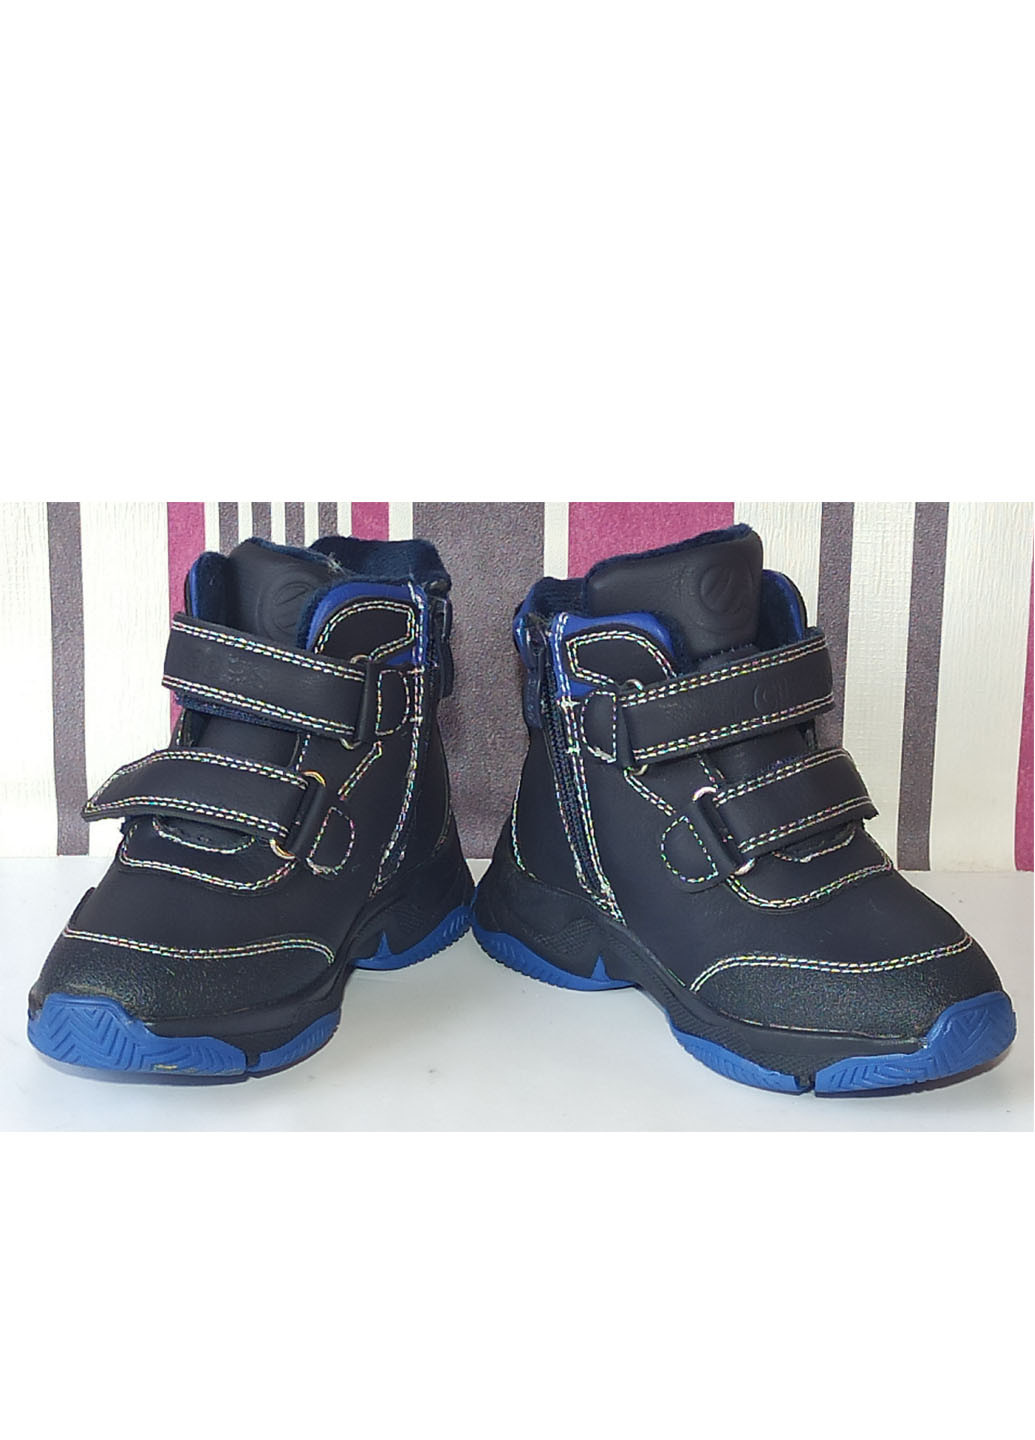 Синие повседневные зимние зимние ботинки для мальчика на овчине н253 синие 26-17,1см Clibee